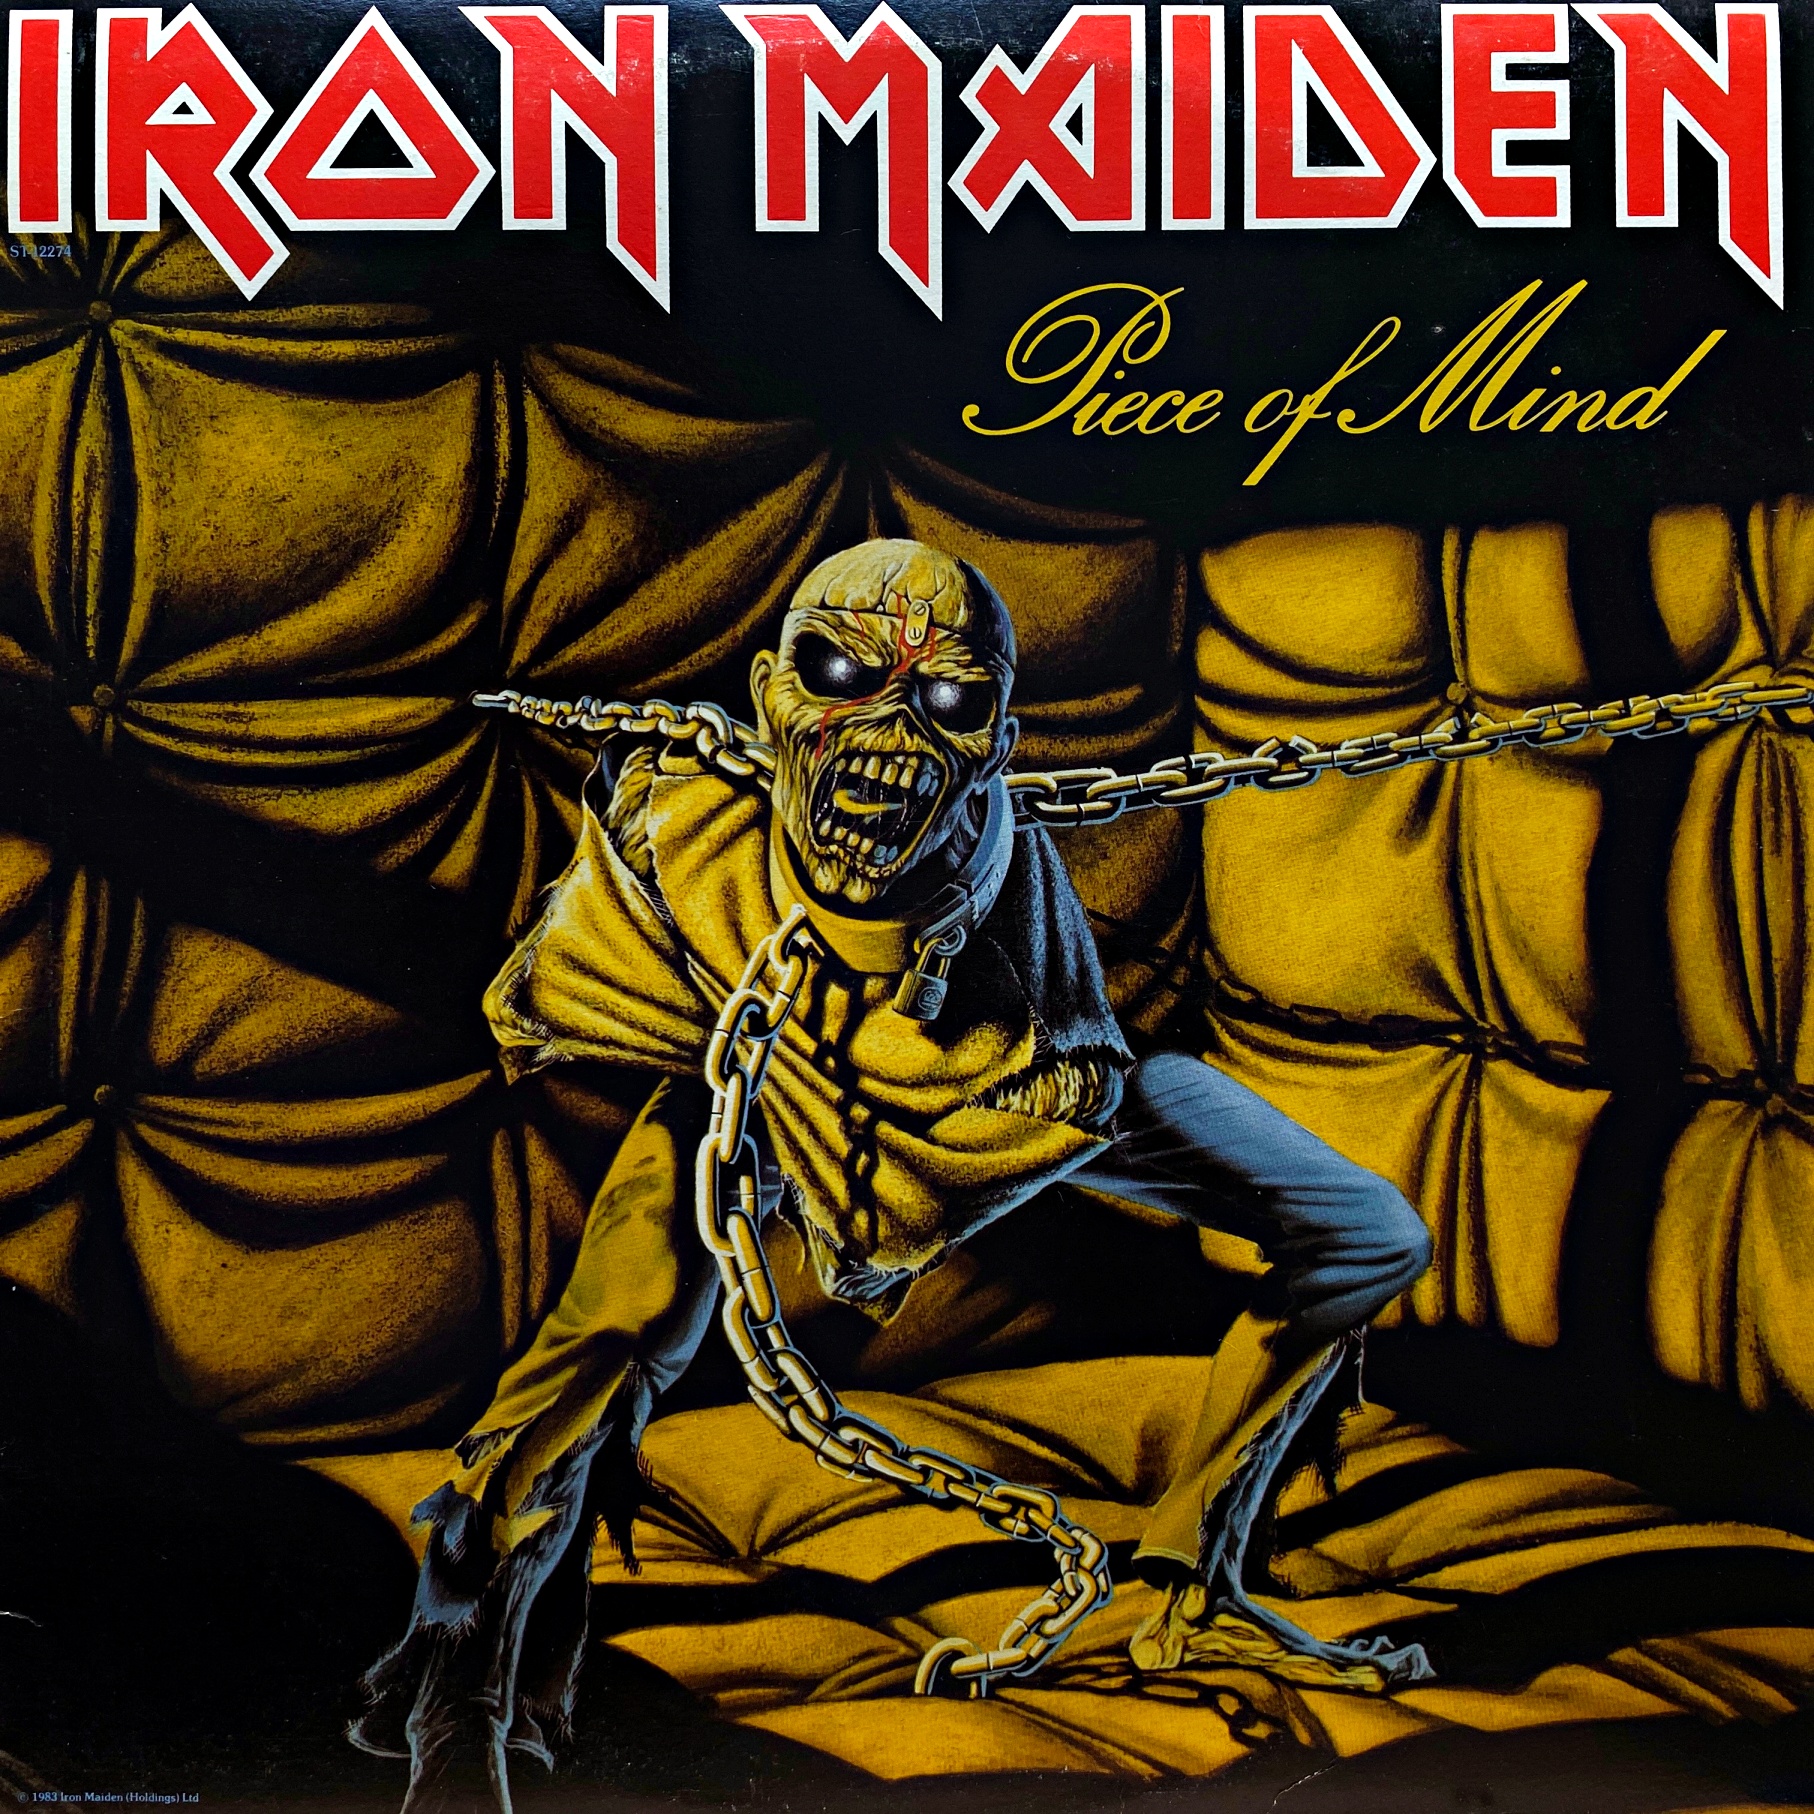 LP Iron Maiden ‎– Piece of Mind